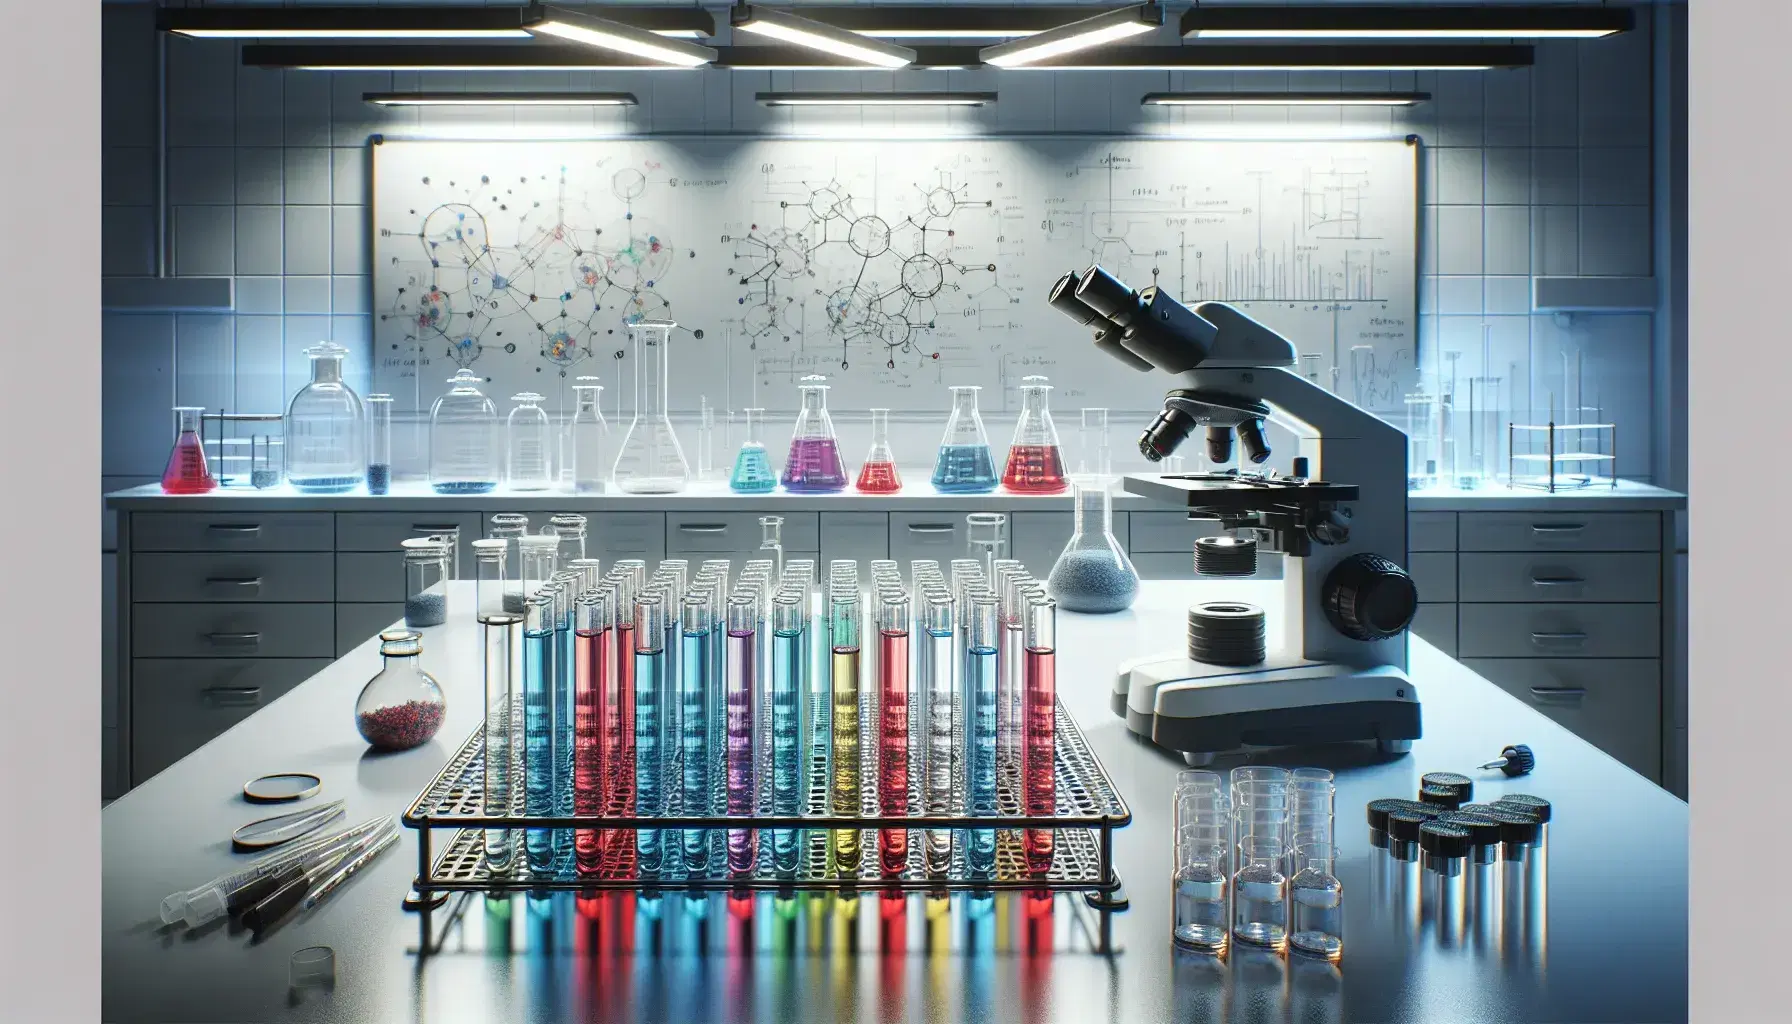 Laboratorio científico con tubos de ensayo de colores en estante metálico, microscopio y estantes con frascos de químicos, iluminado por luces fluorescentes.